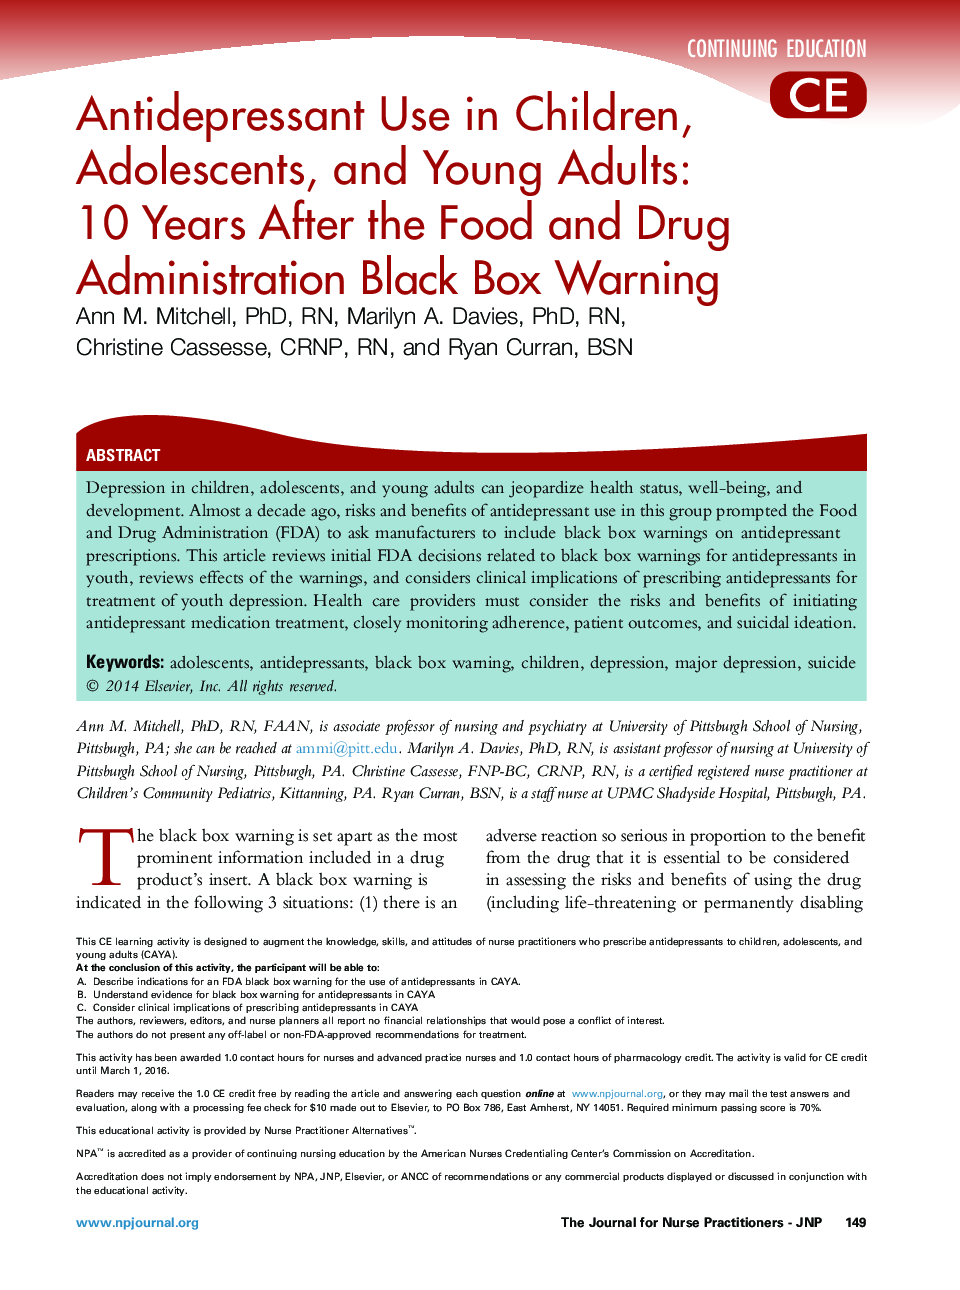 استفاده از داروهای ضد افسردگی در کودکان، نوجوانان و بزرگسالان: 10 سال پس از اداره غذا و داروی هشدار جعبه سیاه 